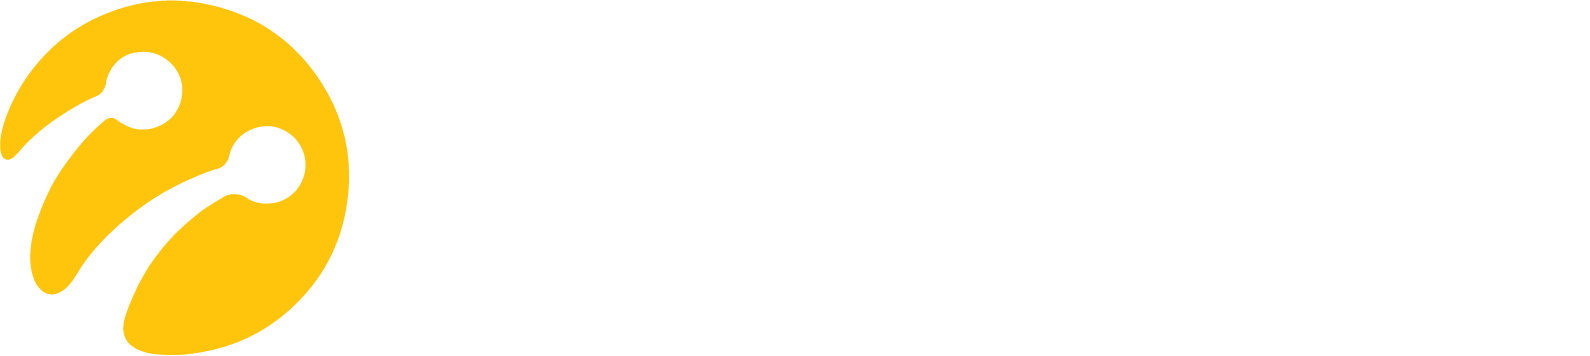 Turkcell logo grand pour les fonds sombres (PNG transparent)